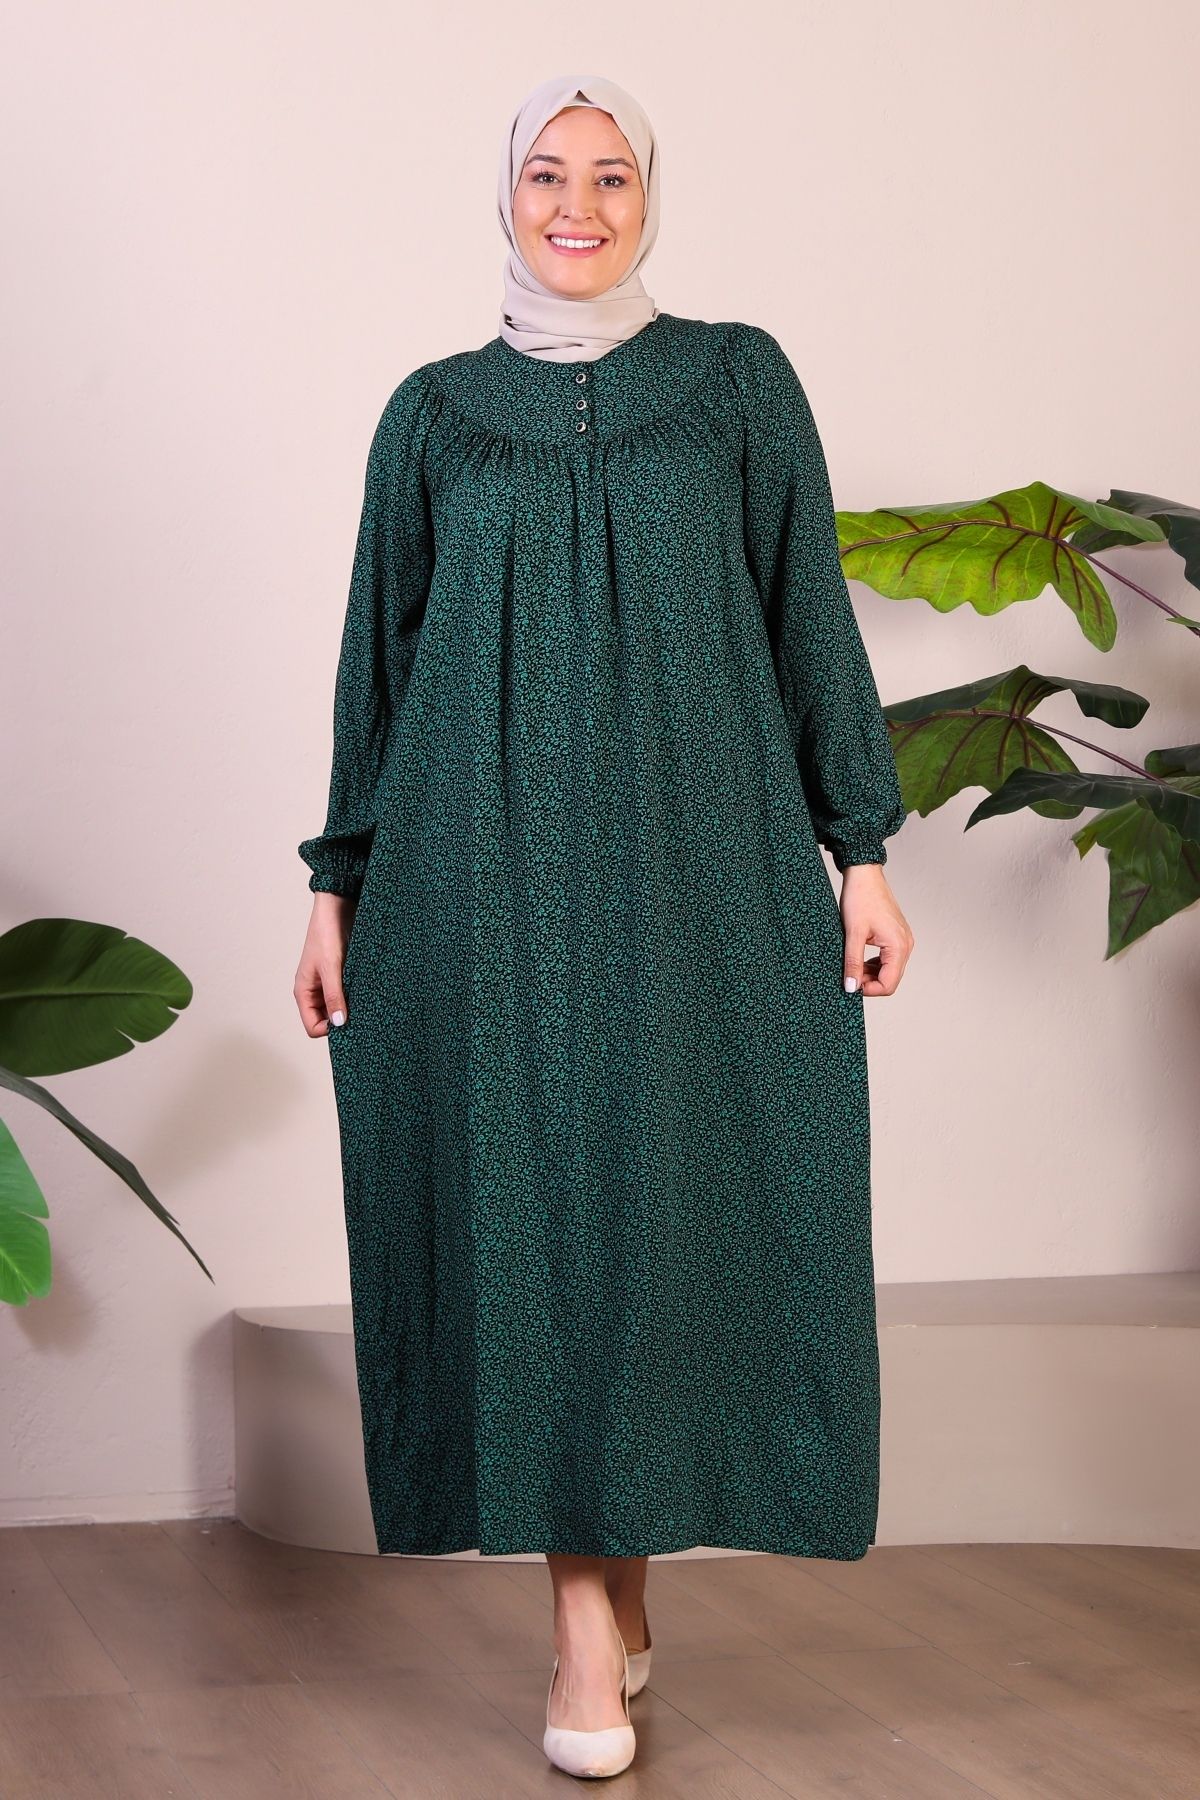 Ferace Uzun Anne Giyim Buyuk Beden Kadin Tesettur Elbise Yeşil